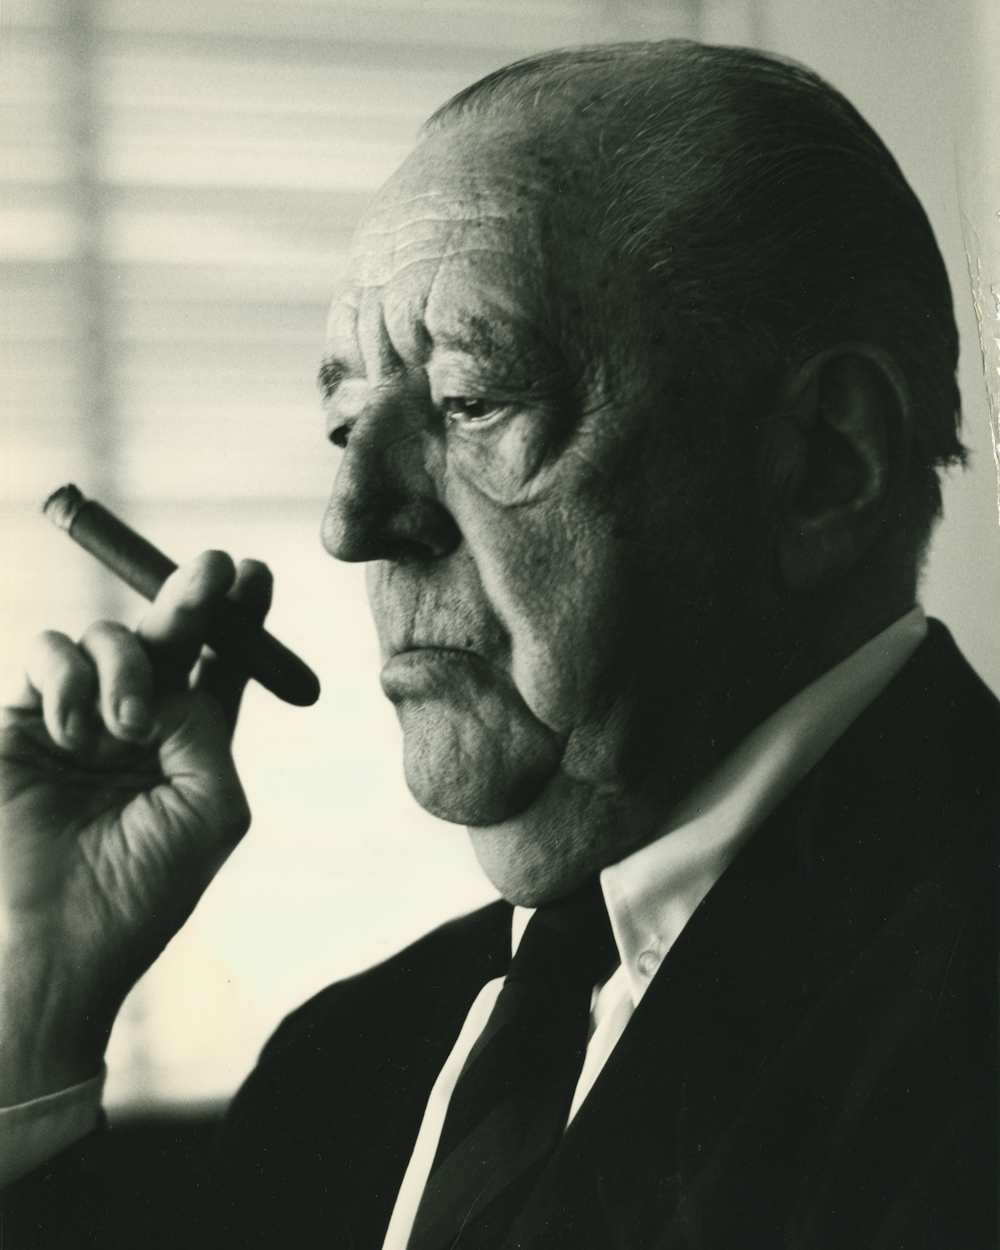 Mies van der Rohe Archival Portrait